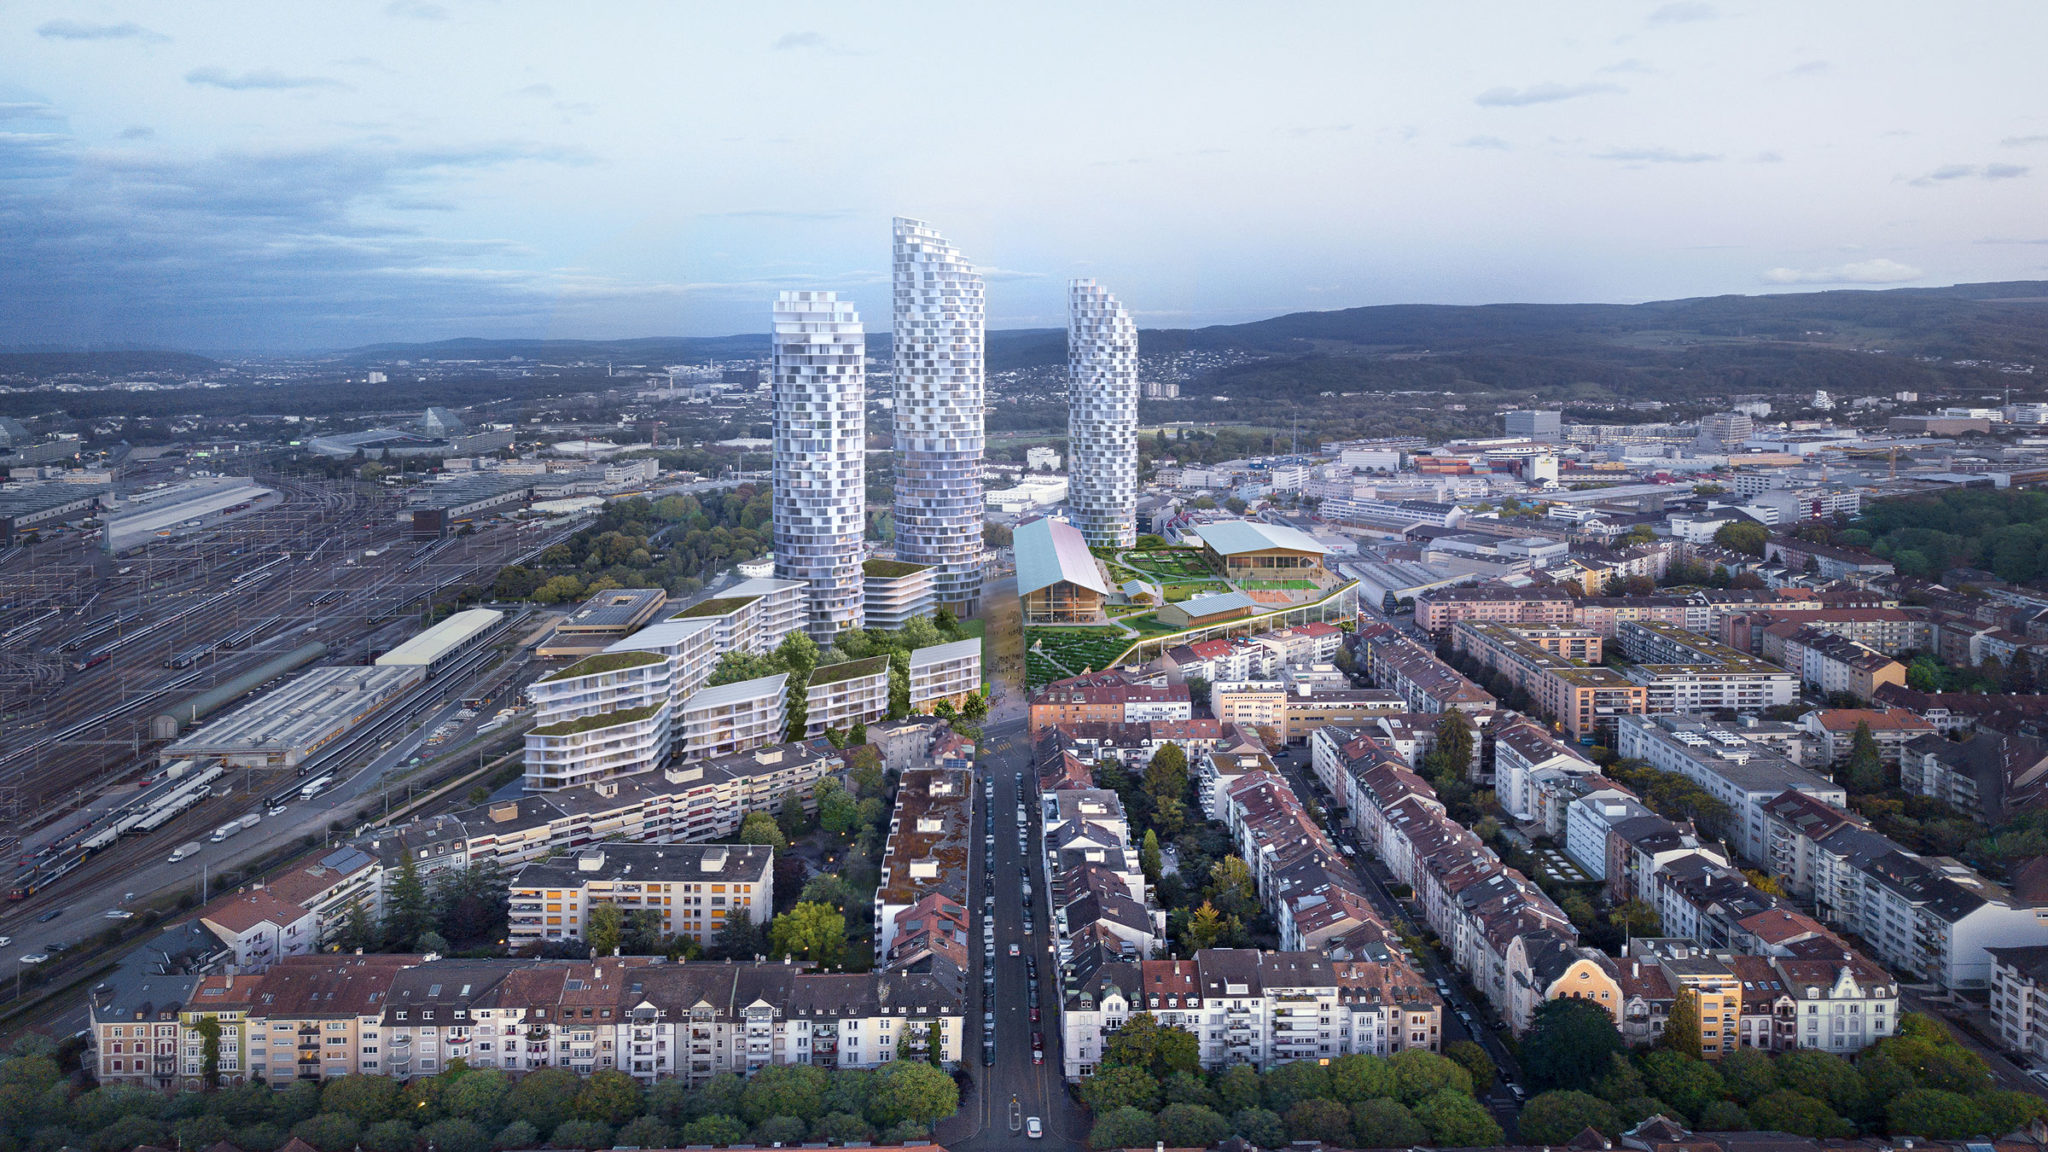 ヘルツォーグ ド ムーロンによる スイス バーゼルの ショッピングセンターの屋上に建つ600人収容の中学校の計画案が公開 Architecturephoto Net